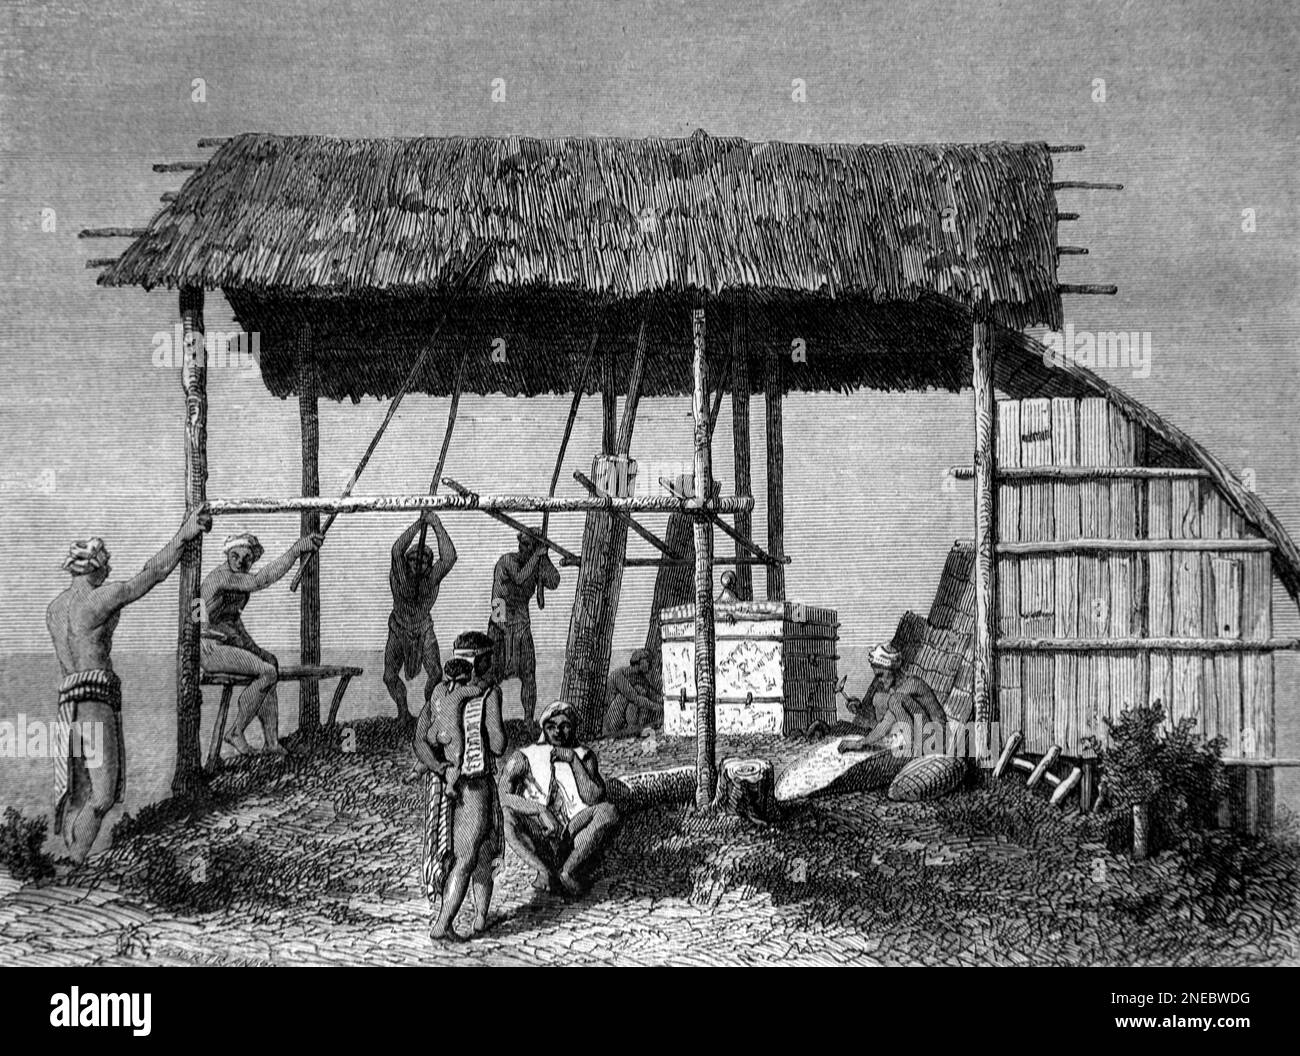 Traditionelle Dayak Forge, Workshop oder Smithy mit Grasdach und Handwerkern Borneo. Vintage-Gravur oder Abbildung 1862 Stockfoto